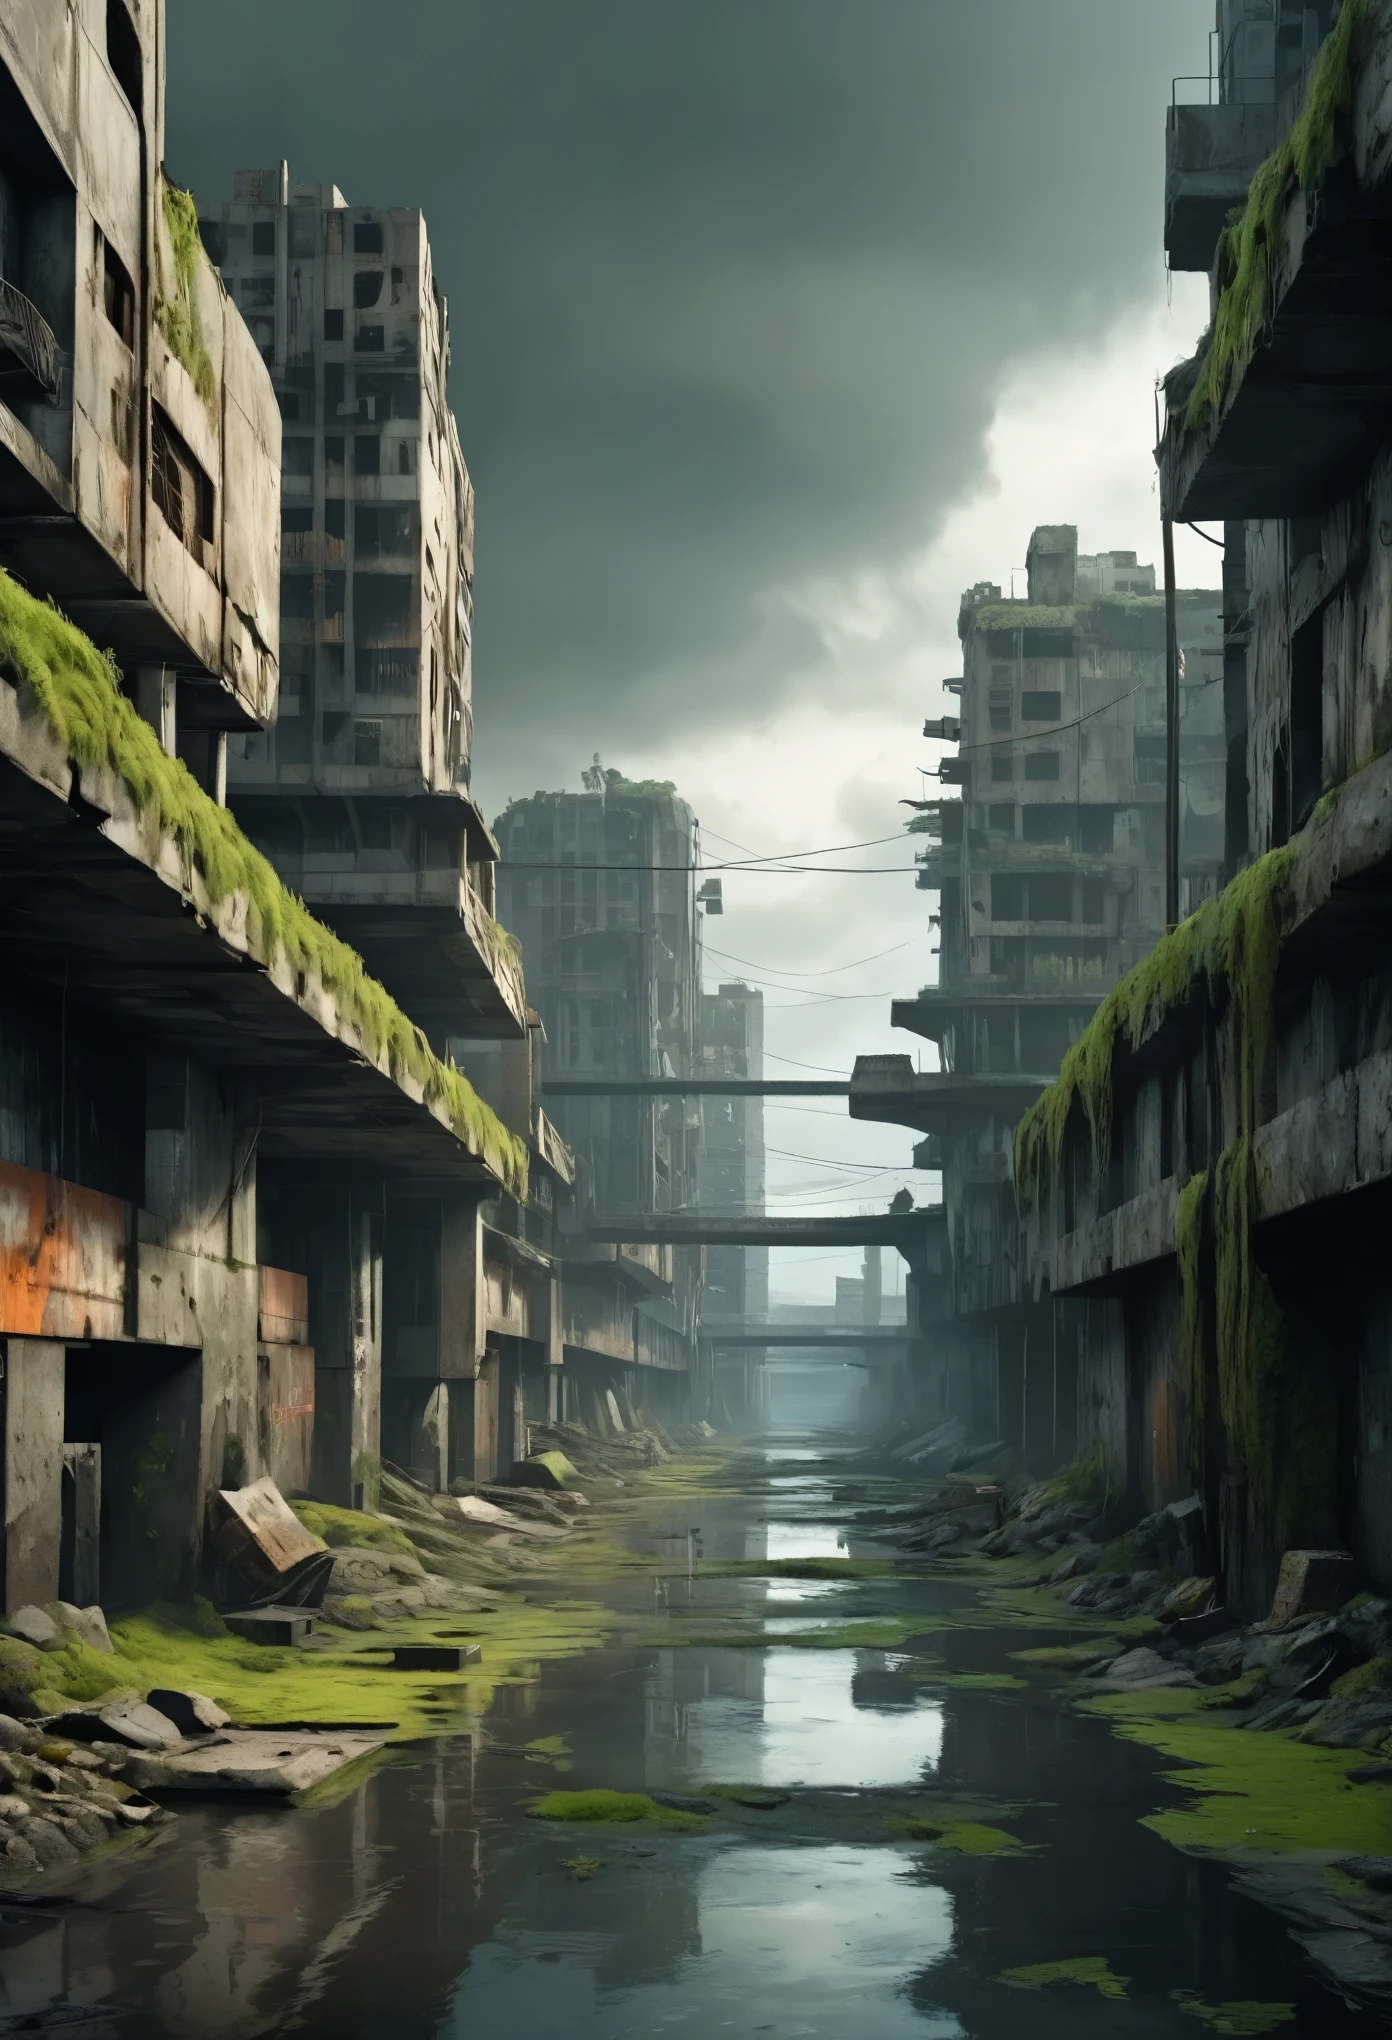 Изображение дна глубокого речного русла с глубокими стенами посреди мегаполиса, опустошенного апокалипсисом, вокруг несколько пришедших в упадок и обрушившихся футуристических бетонных зданий., Стиль Мэдмакс, пустошь, сухой и полуразрушенный причал, вокруг мало воды и мха, сценарий вдохновлен сценарием игры Half Life 2, серое и дождливое небо, дождь, здания в оттенках серого, пейзажи в оттенках серого, есть туман, 